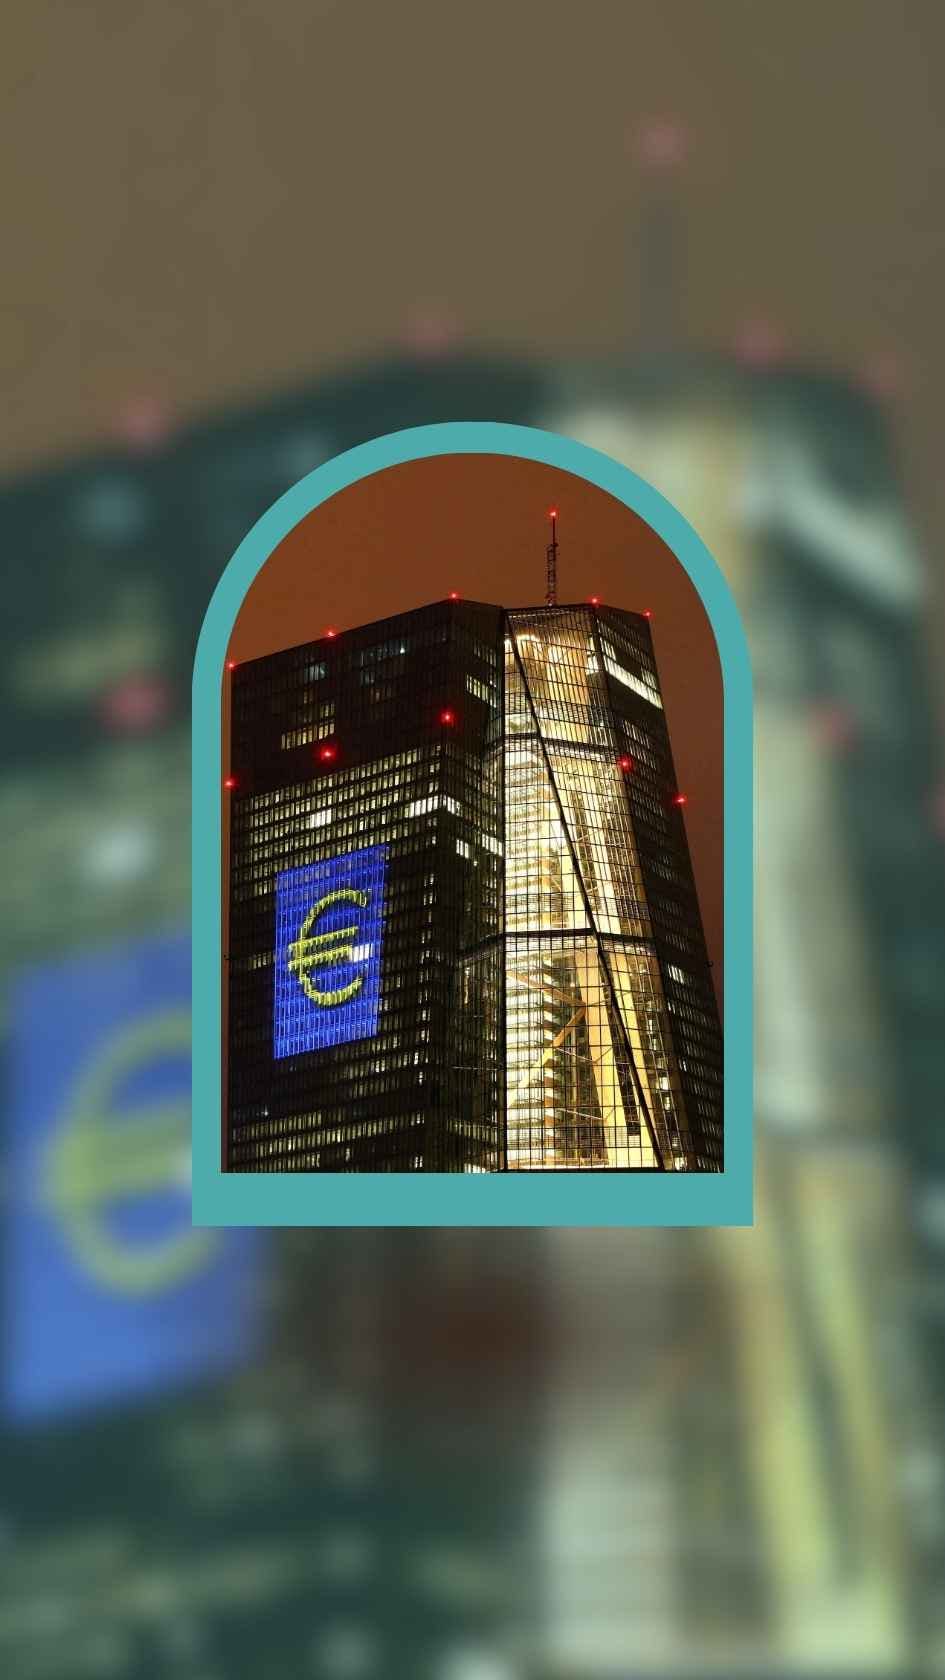 المركزي الأوروبي